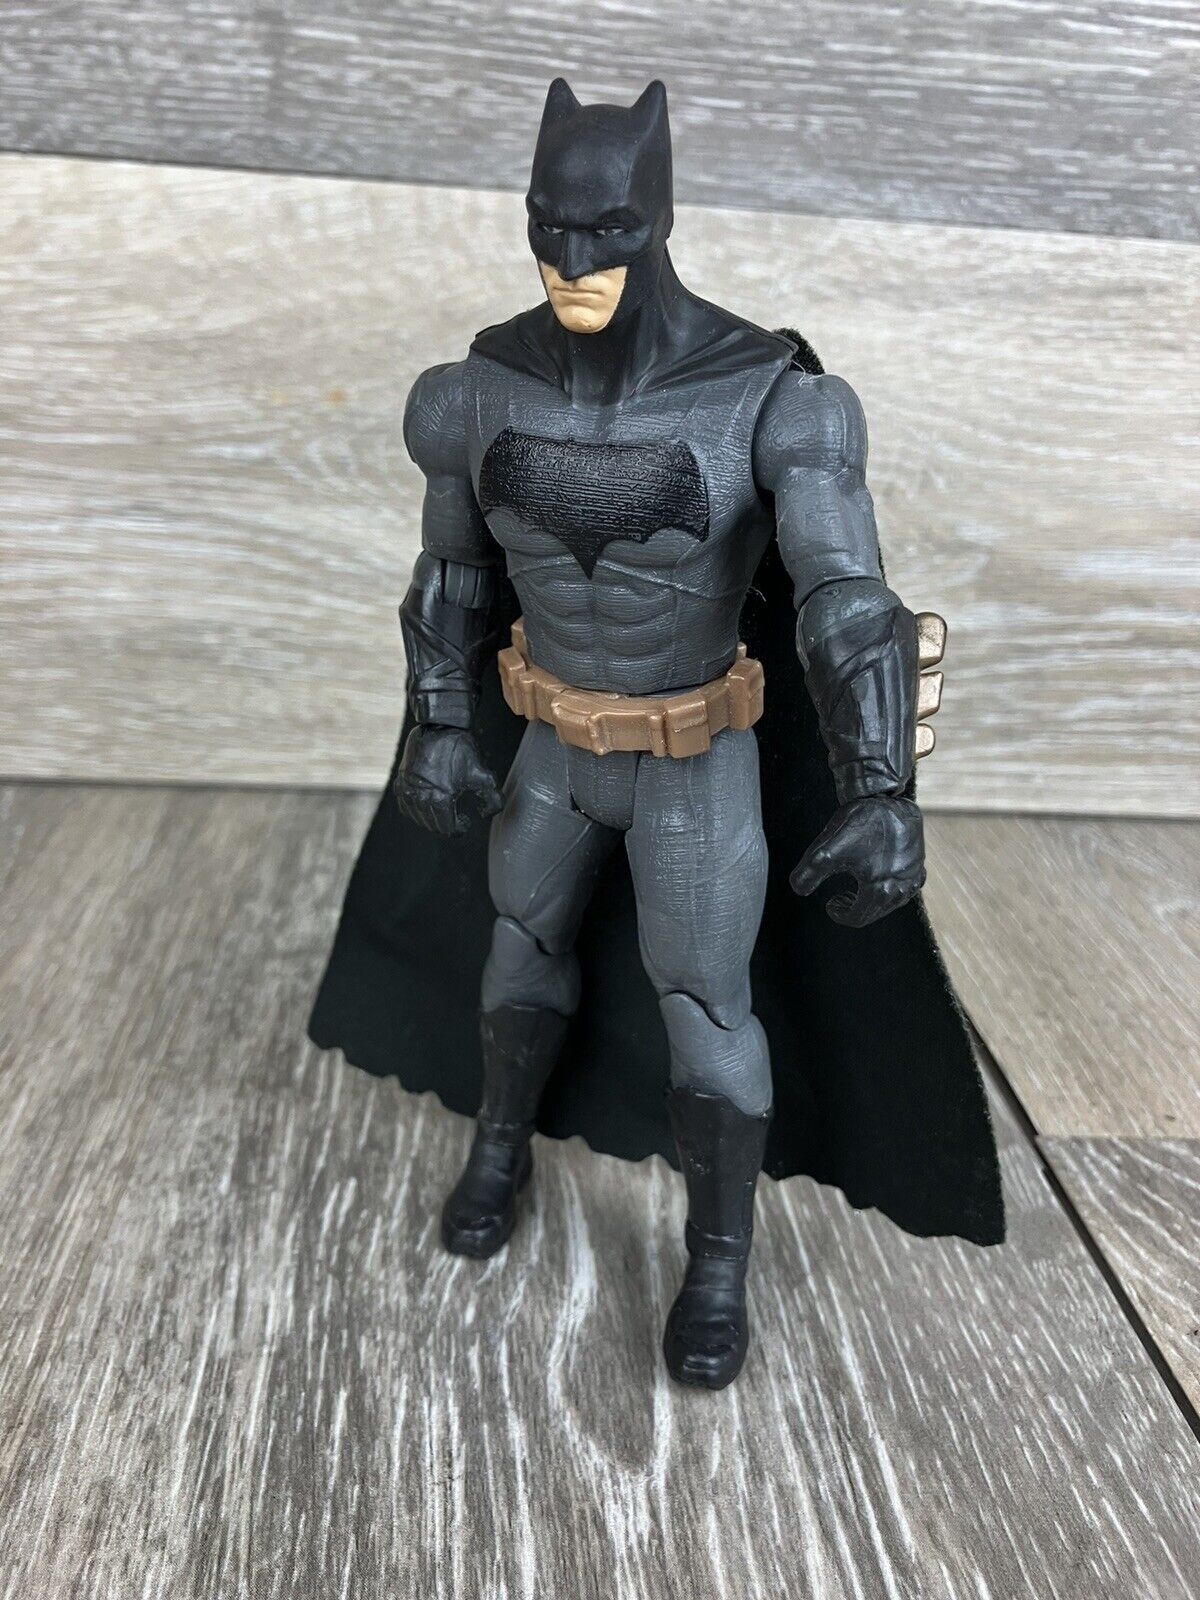 Batman Multiverse Justice League 6” Figure Loose 2017 Mattel